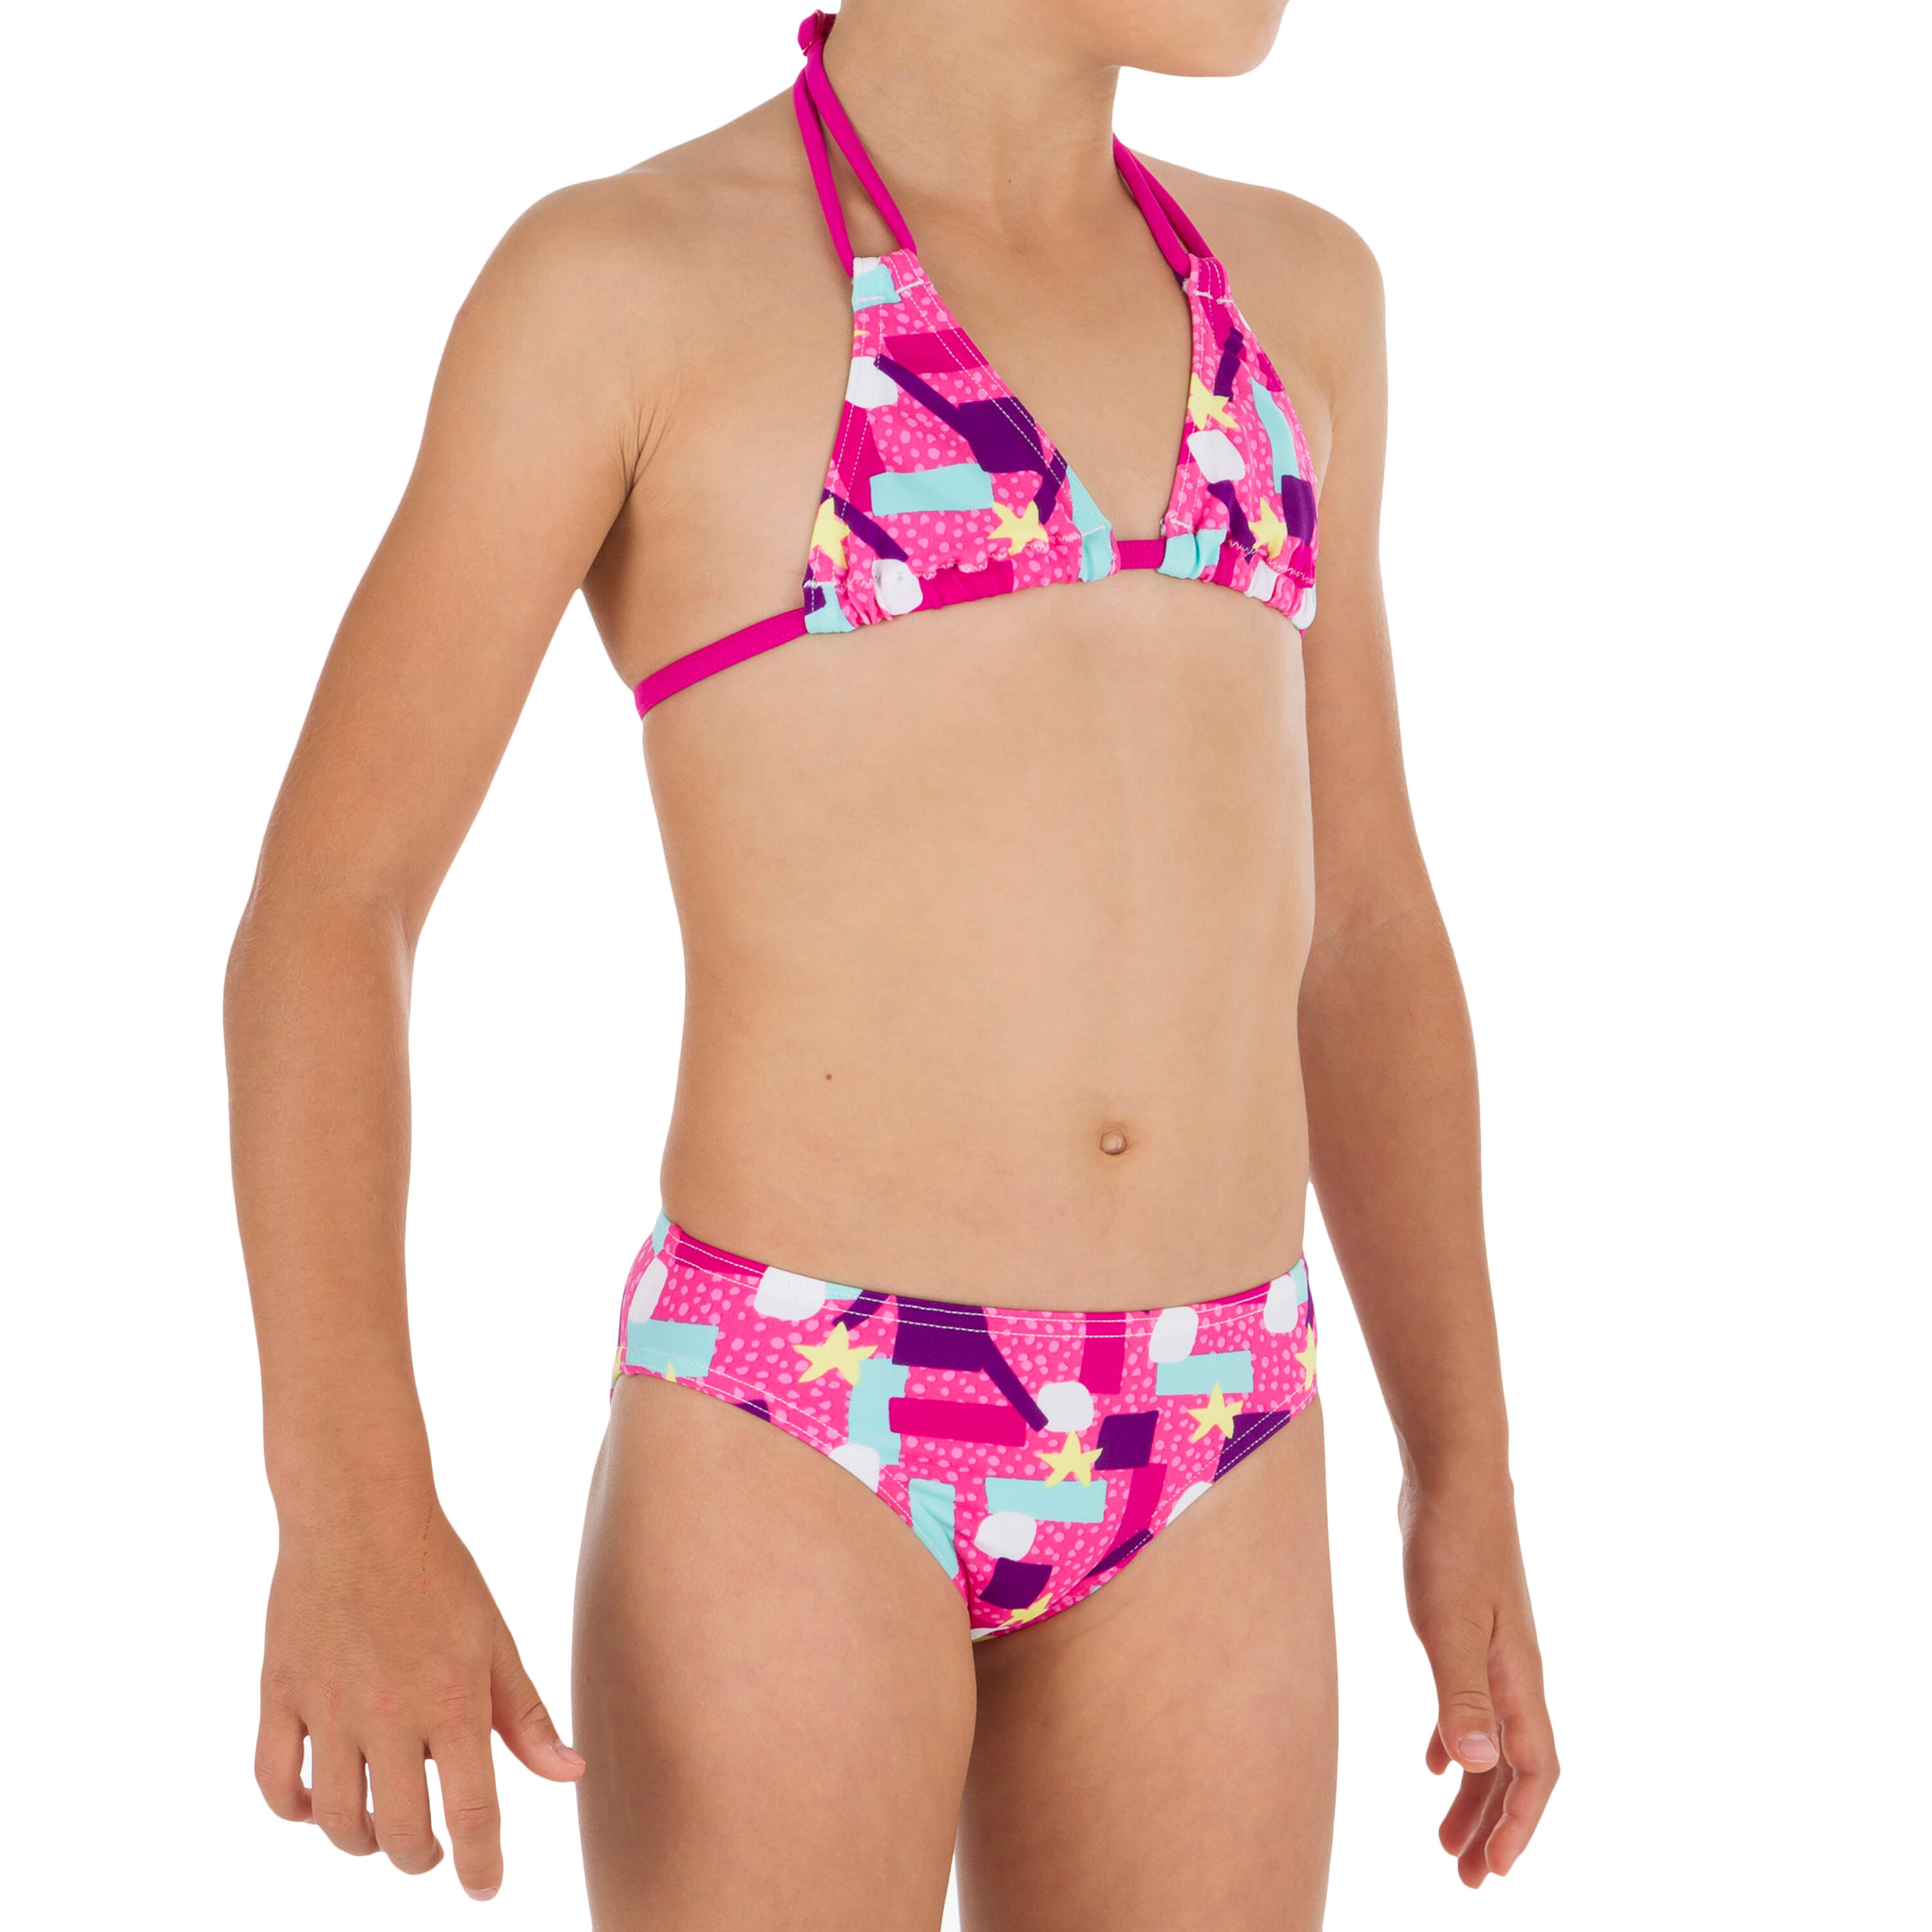 Taloo Girls' Two-Piece Triangle Bikini Swimsuit - Lagoon Pink 1/8